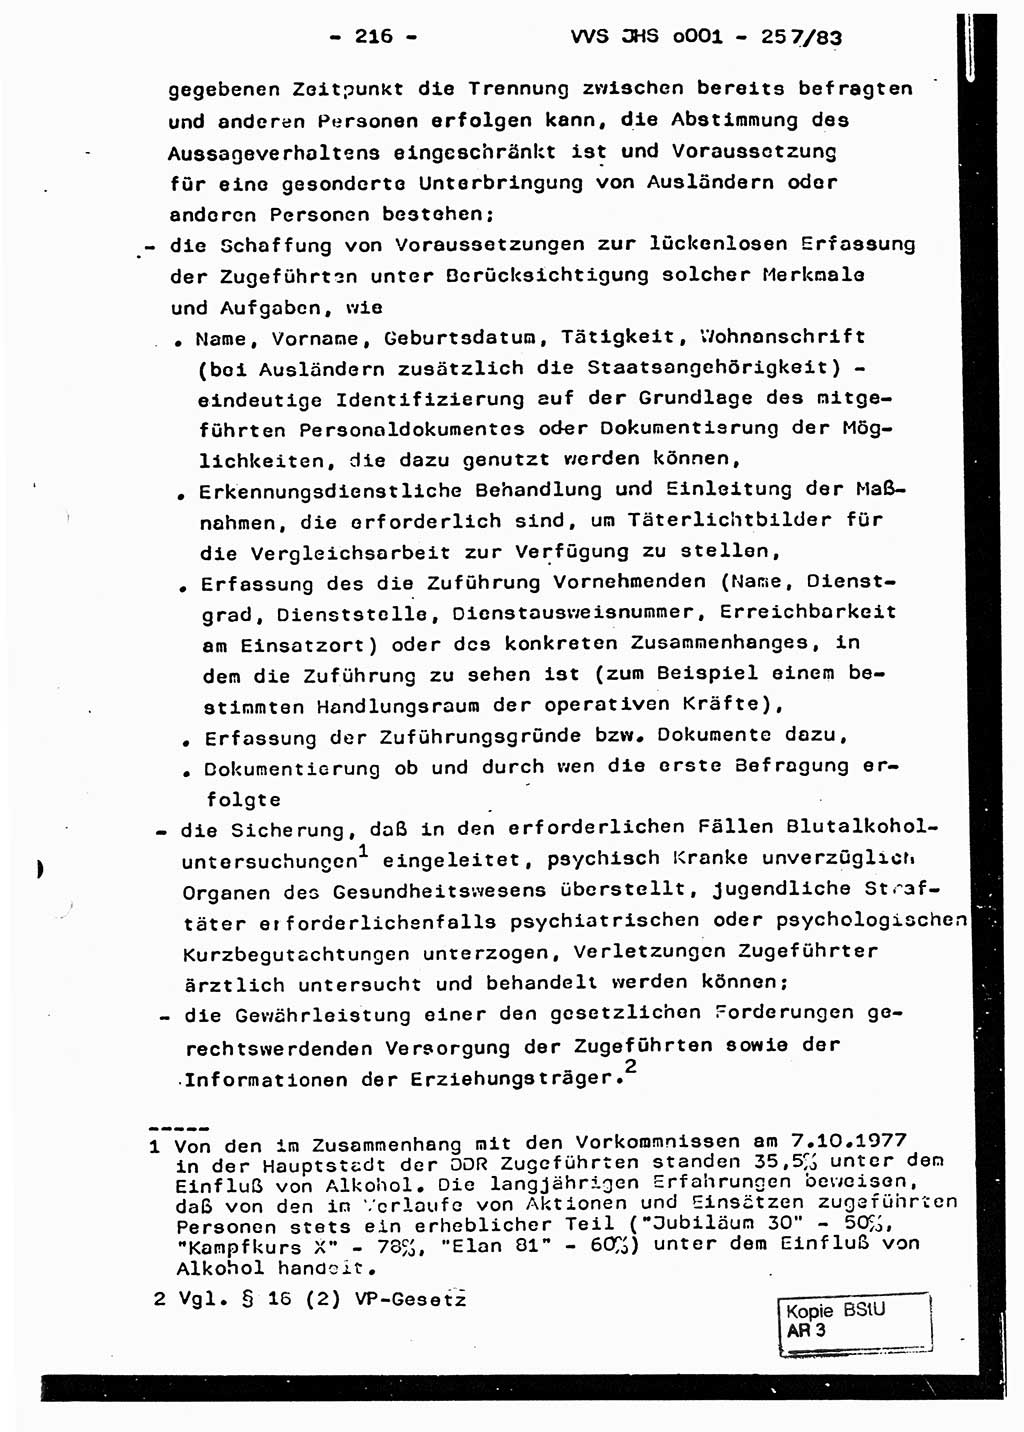 Dissertation, Oberst Helmut Lubas (BV Mdg.), Oberstleutnant Manfred Eschberger (HA IX), Oberleutnant Hans-Jürgen Ludwig (JHS), Ministerium für Staatssicherheit (MfS) [Deutsche Demokratische Republik (DDR)], Juristische Hochschule (JHS), Vertrauliche Verschlußsache (VVS) o001-257/83, Potsdam 1983, Seite 216 (Diss. MfS DDR JHS VVS o001-257/83 1983, S. 216)